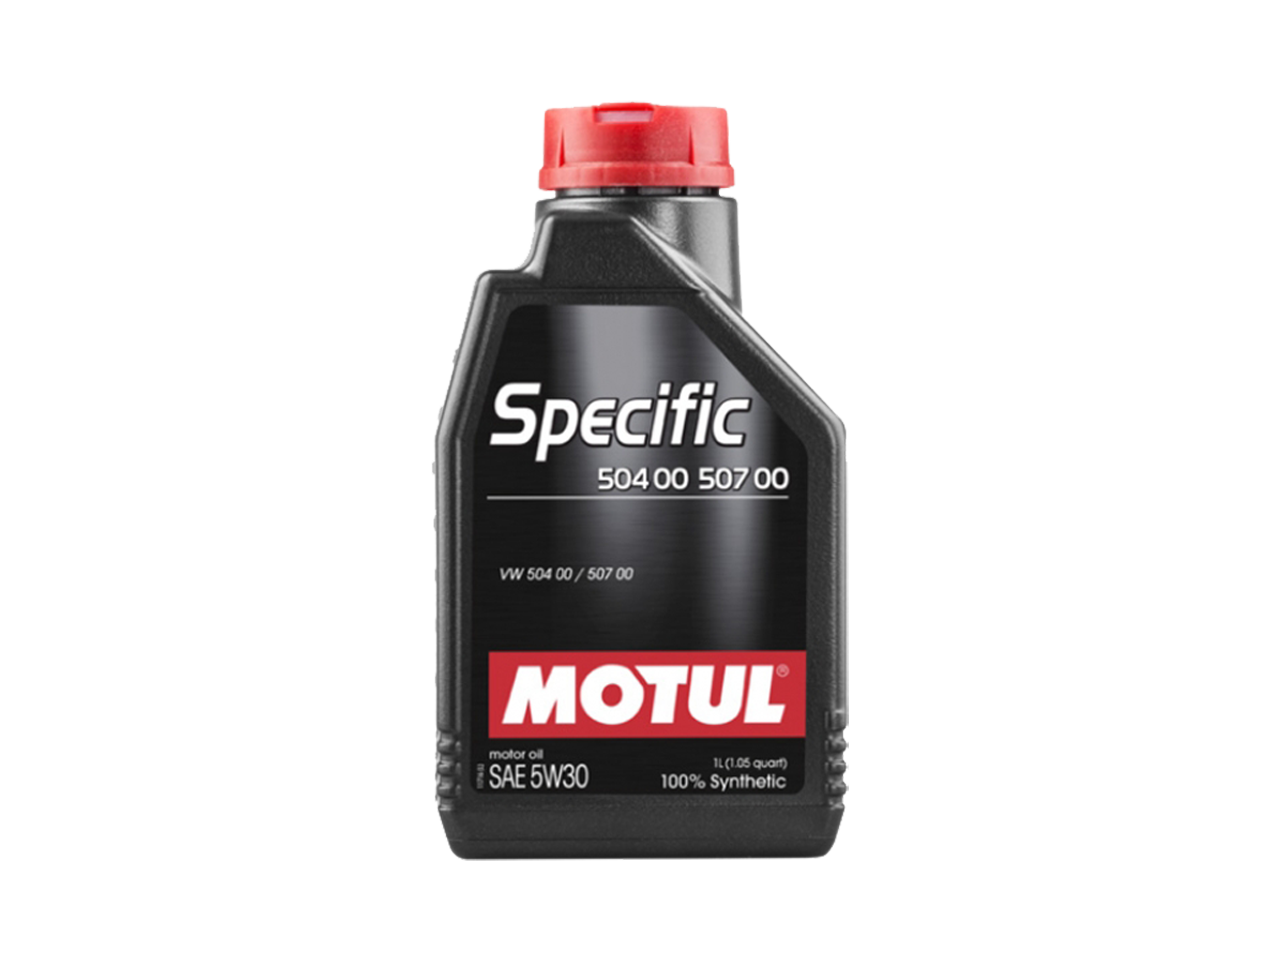 Купить недорого Моторное масло Motul SPECIFIС 504 00 / 507 00 в Москве